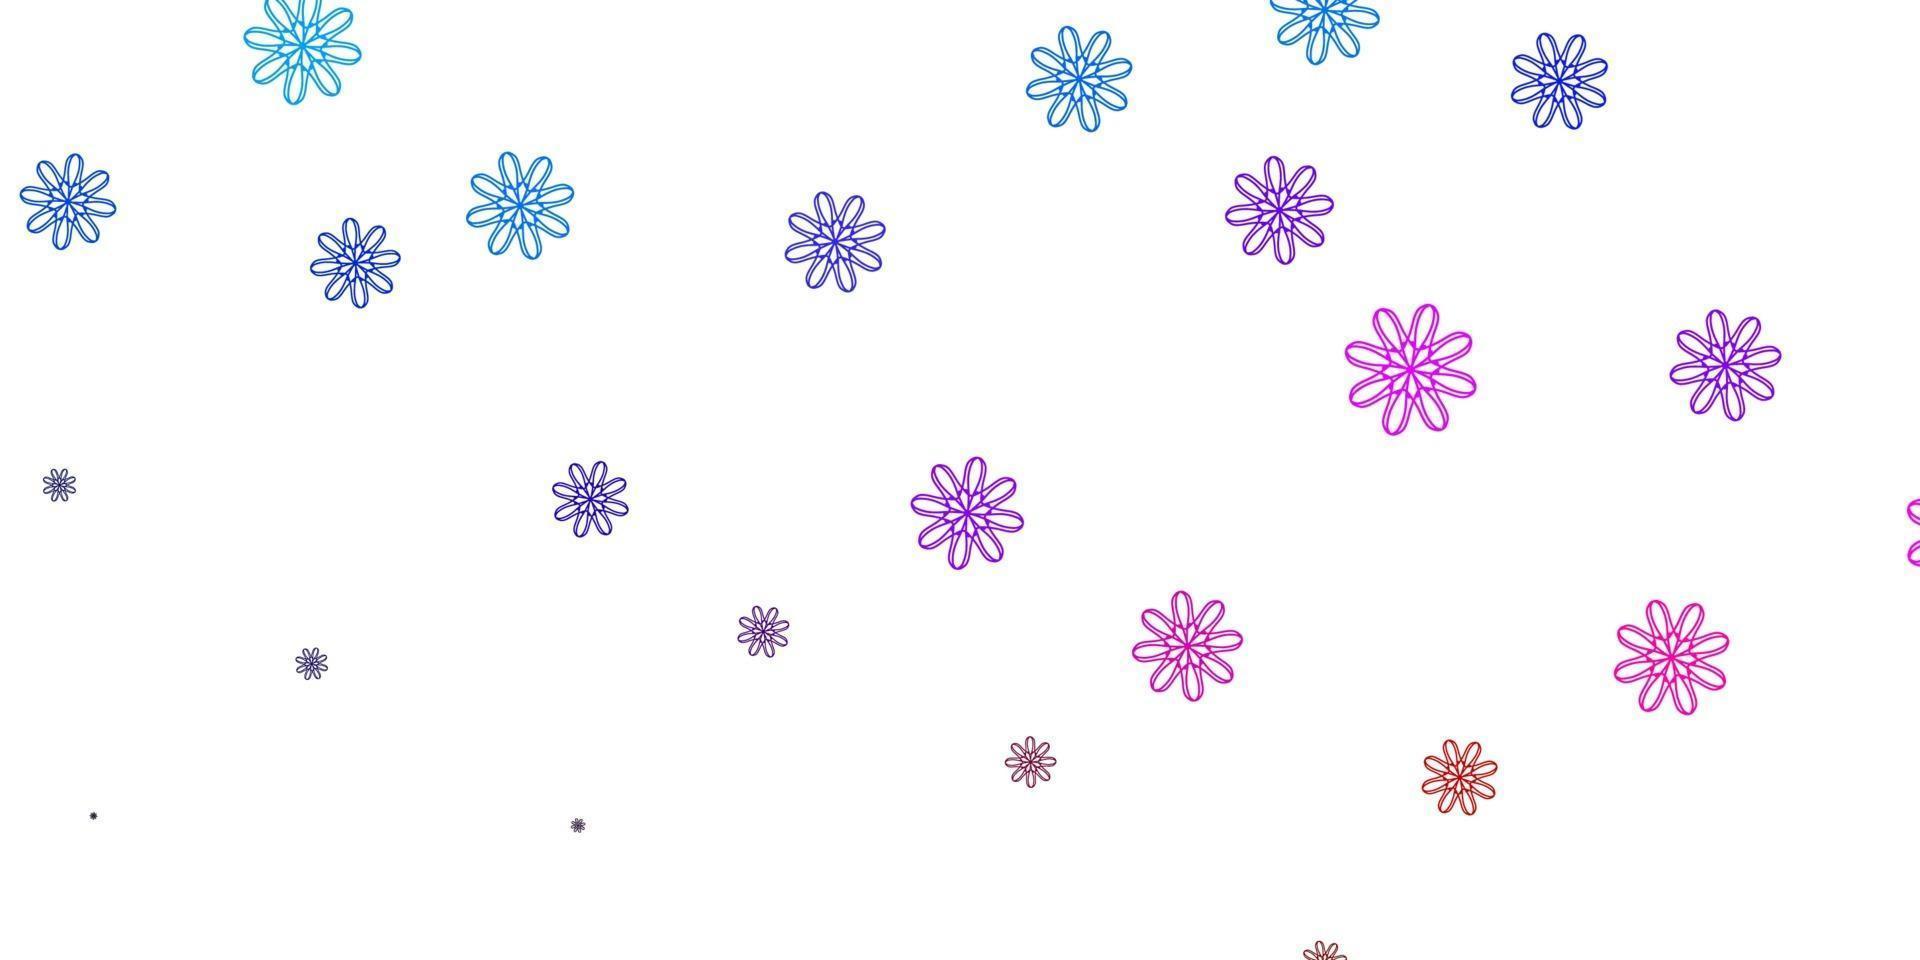 modèle de doodle vecteur bleu clair, rouge avec des fleurs.